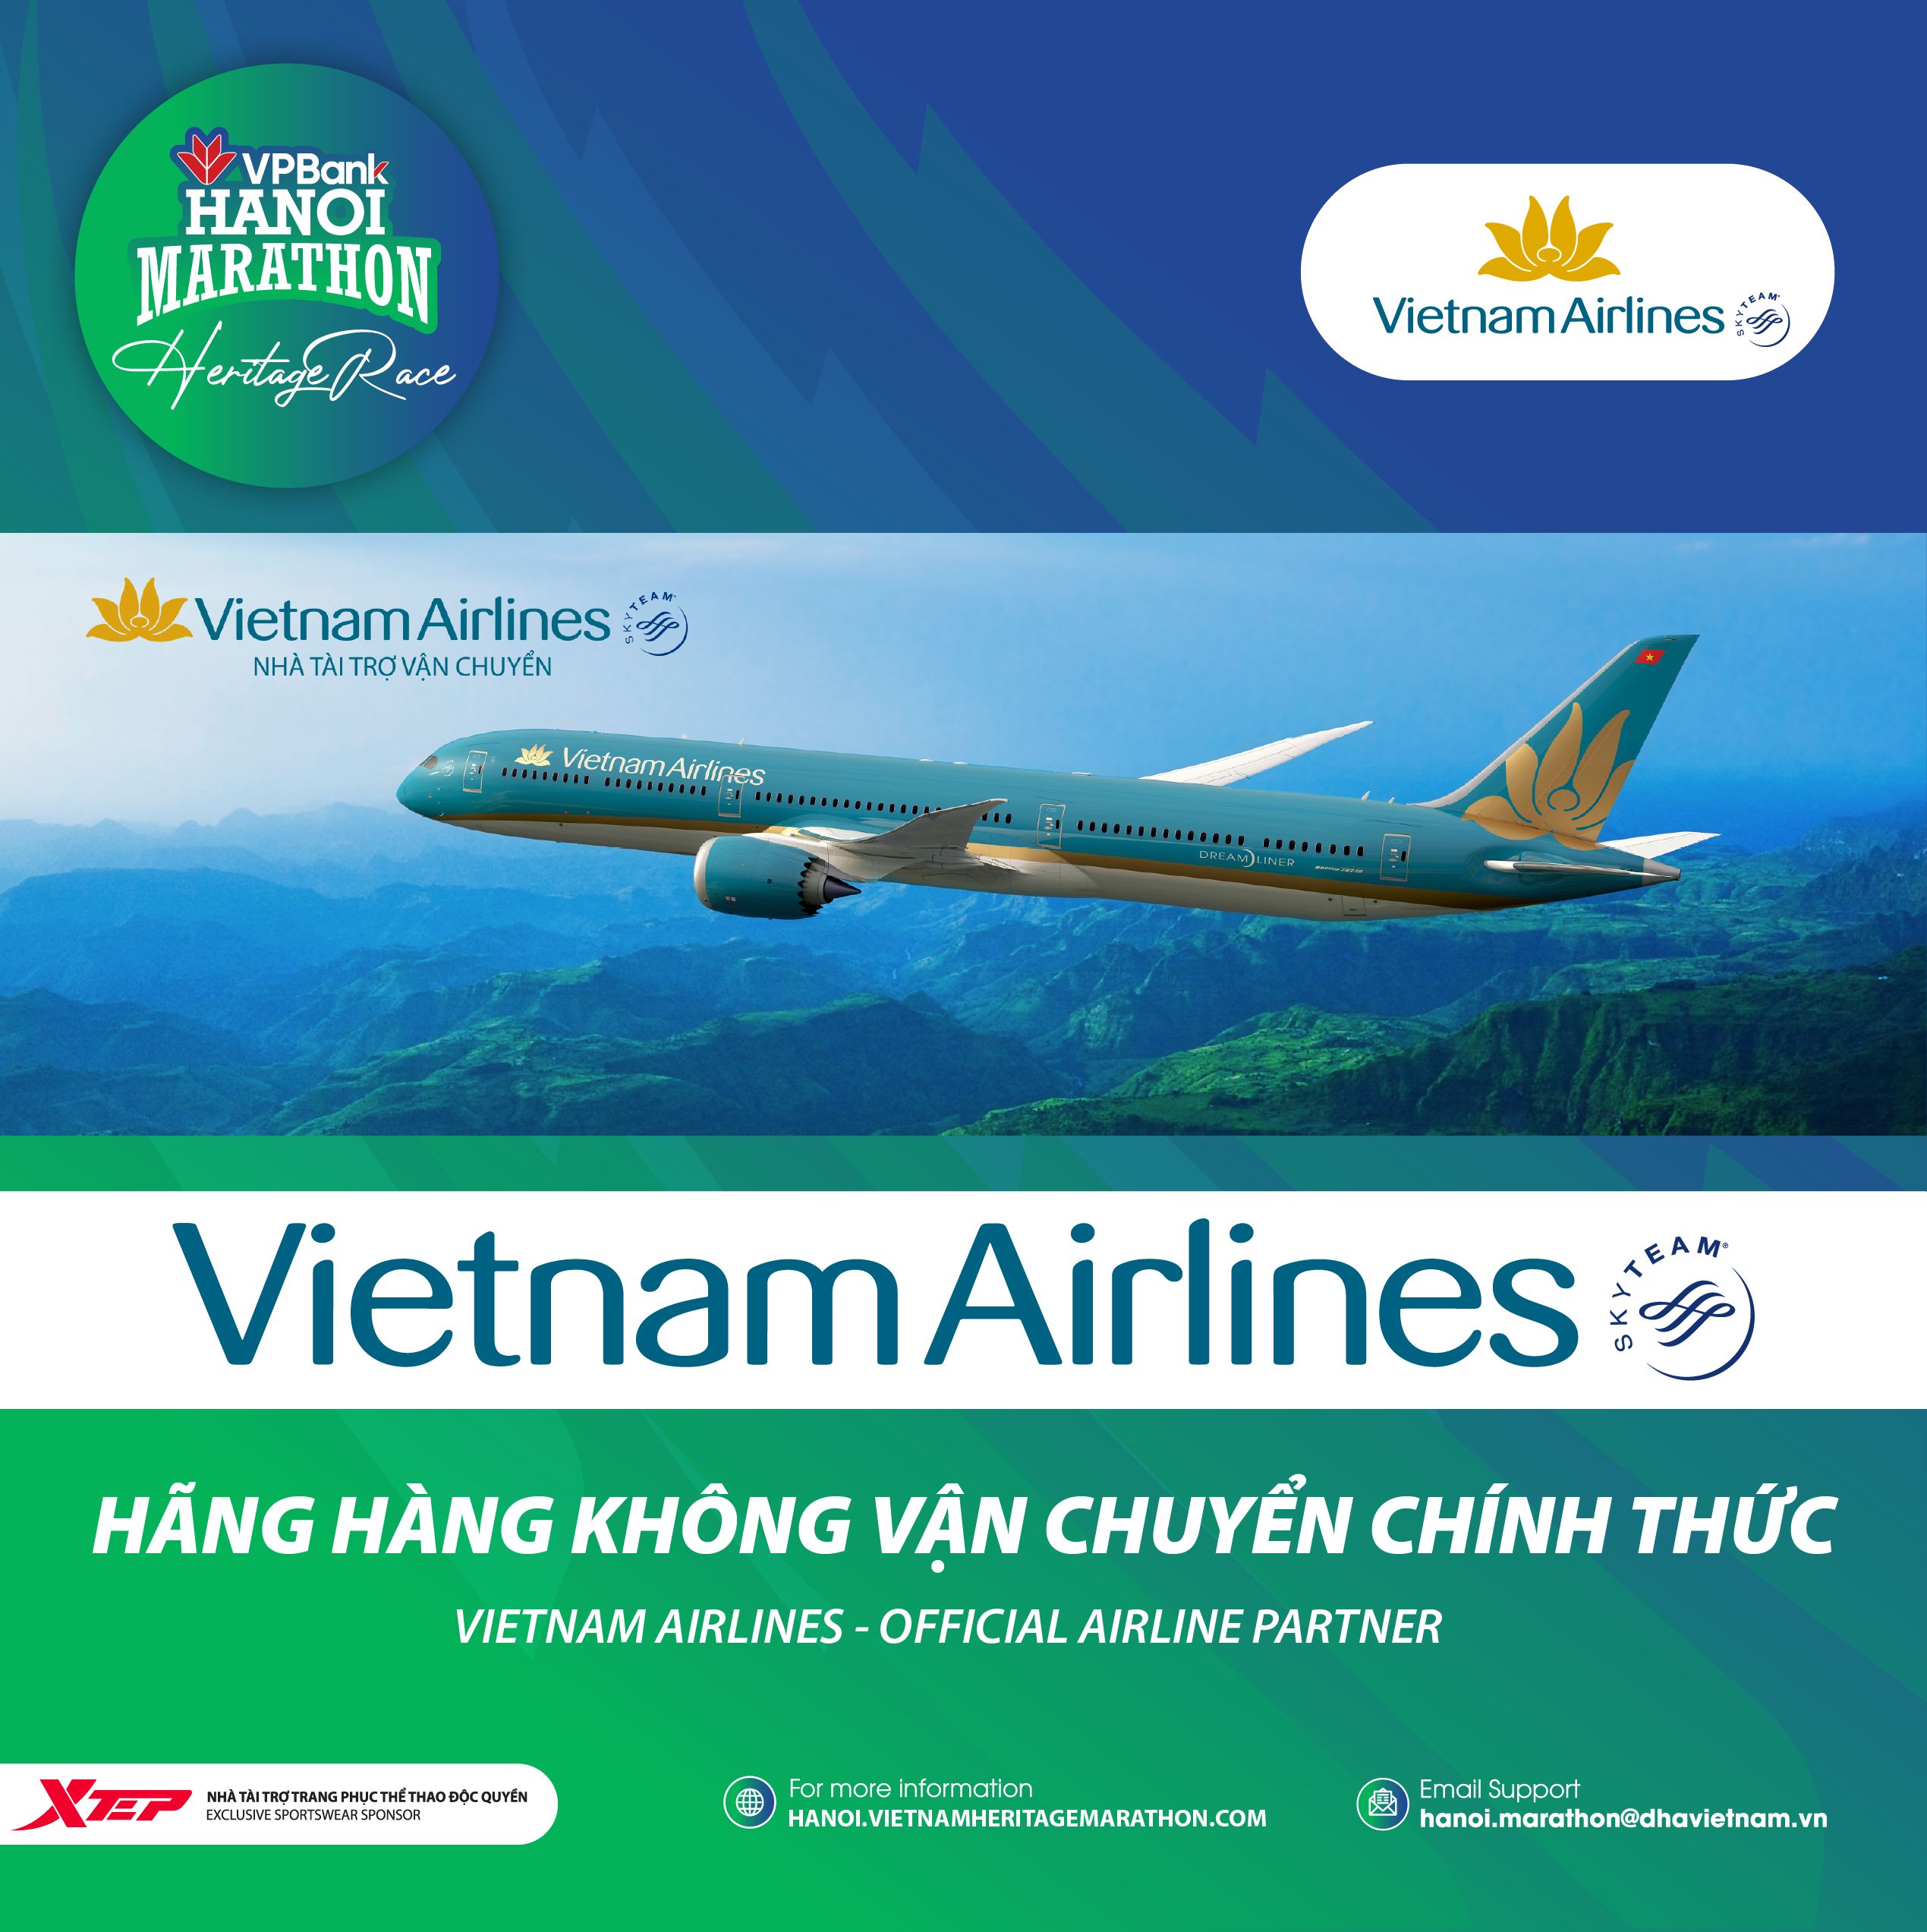 Vietnam Airlines - Đối Tác Hàng Không Của VPBank Hanoi Marathon